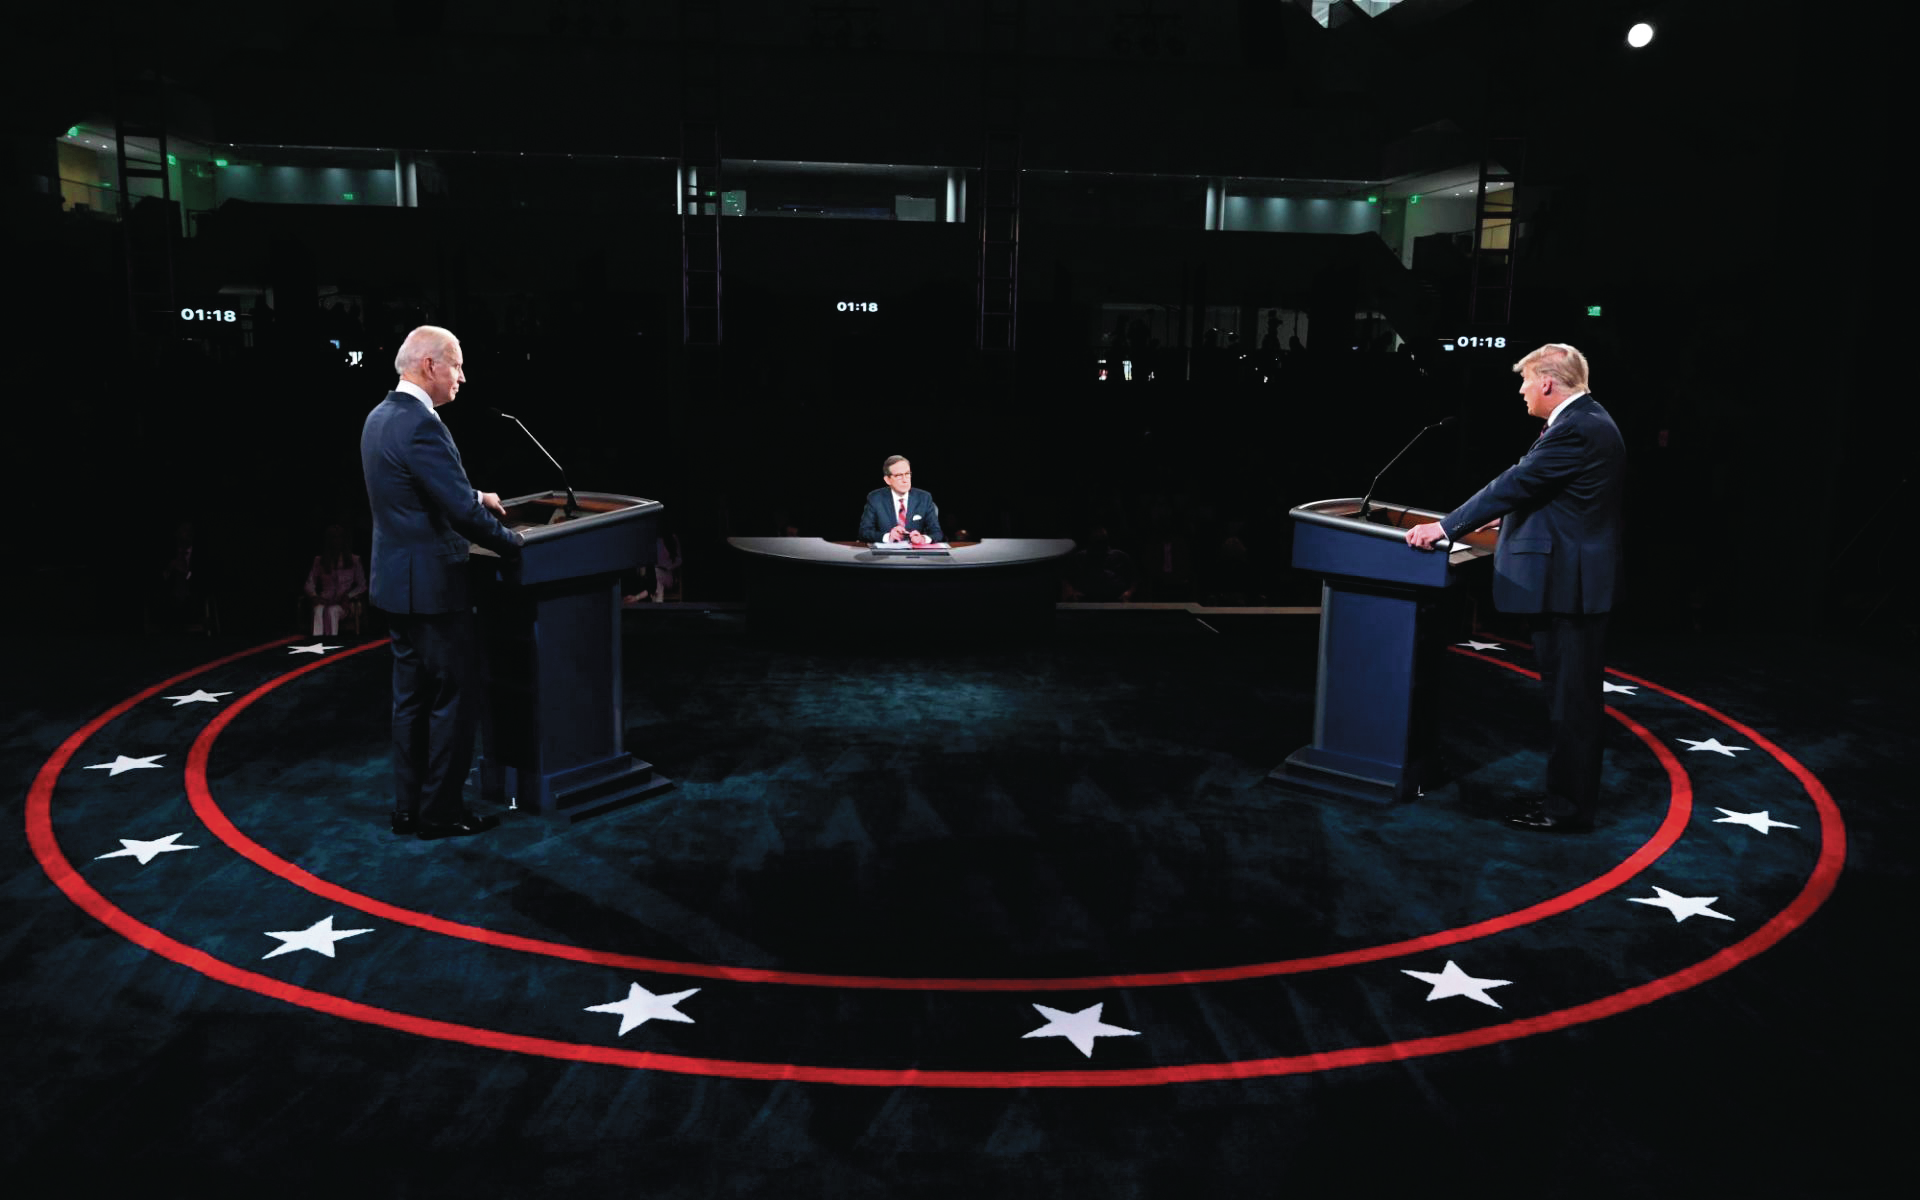 Eleições. Debate com microfones silenciados para controlar o “caos”